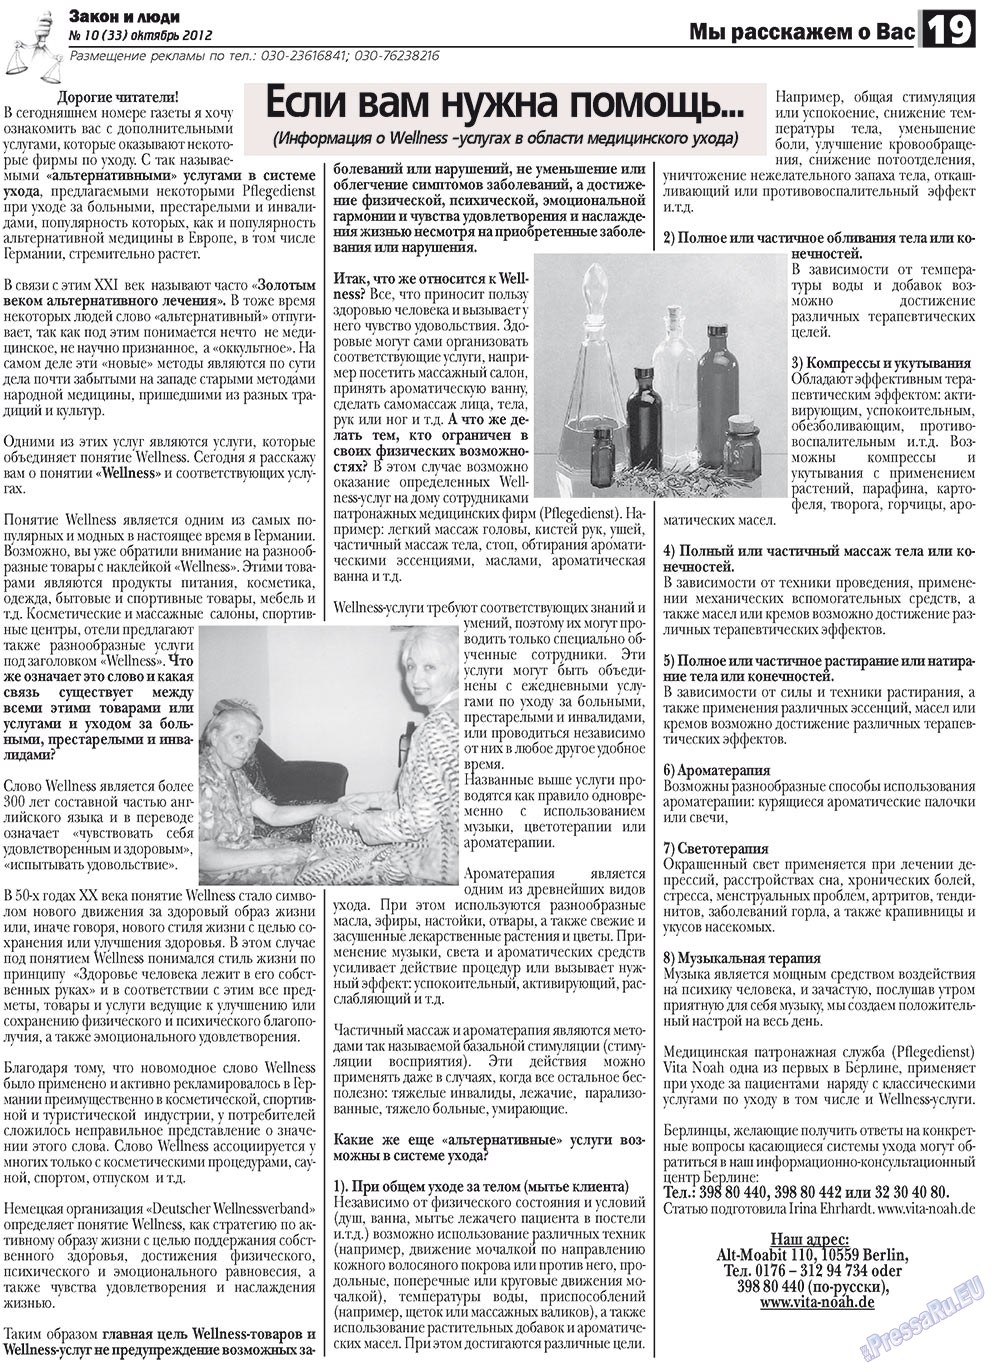 Закон и люди (газета). 2012 год, номер 10, стр. 19